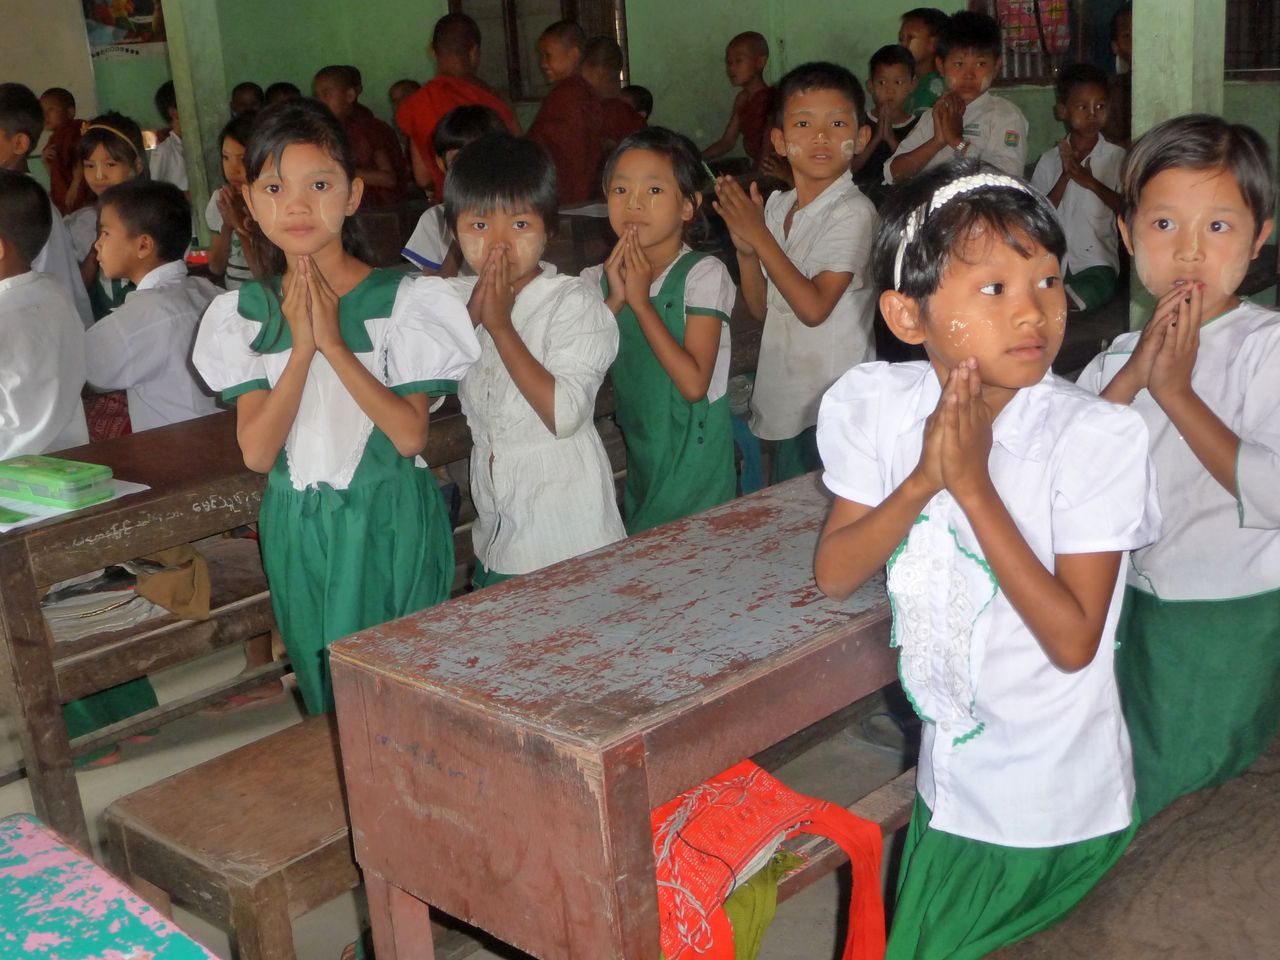 ミャンマーにおける人身売買の状況 16年 ビルマのカチン州 シャン州での出来事 Written By 菅光晴